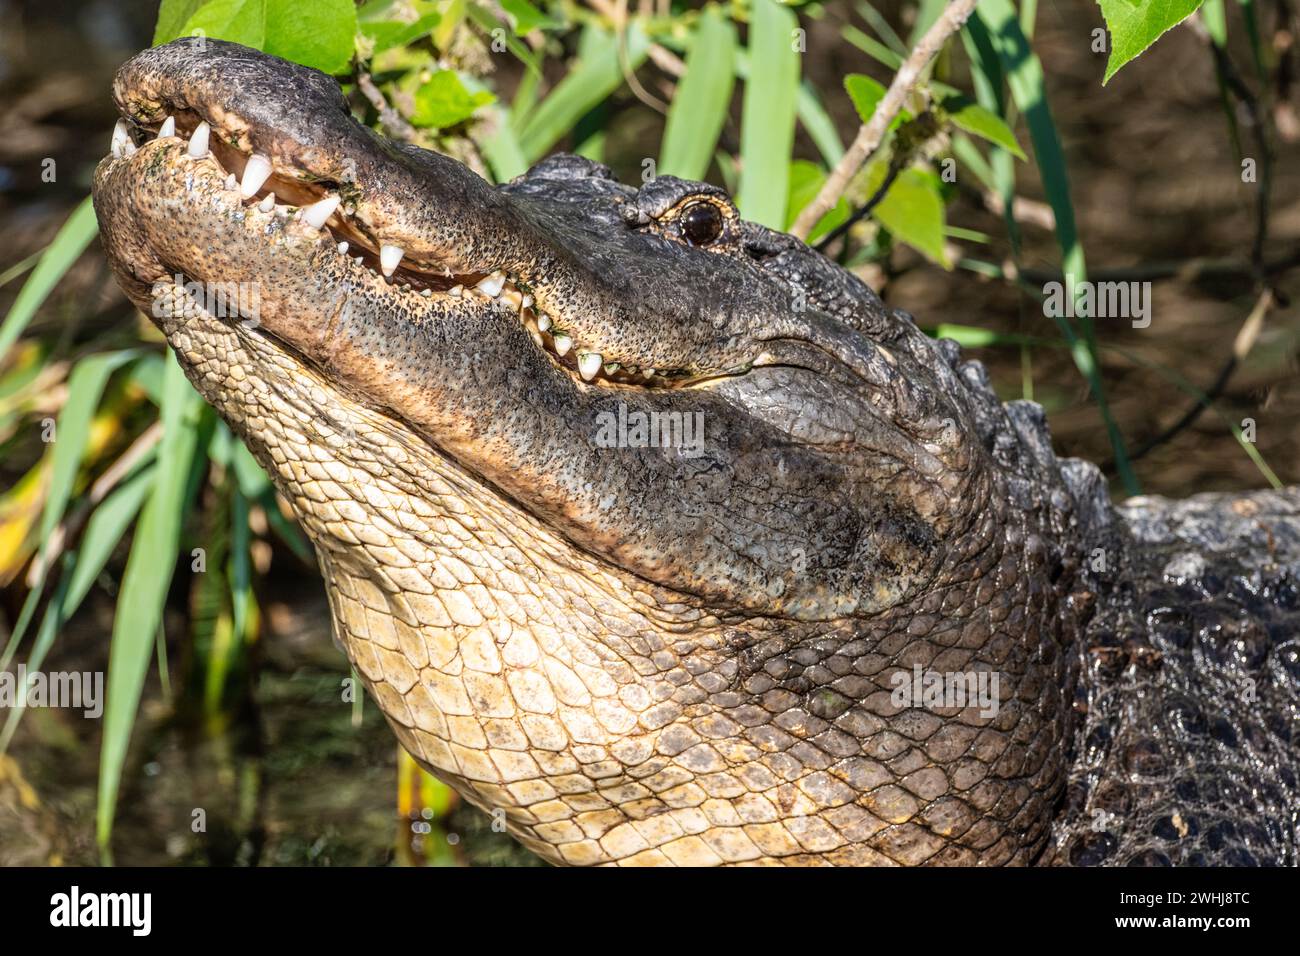 Alligatore americano (Alligator mississippiensis) che alza la testa mentre si allena al St. Augustine Alligator Farm Zoological Park a St. Augustine, Florida. Foto Stock